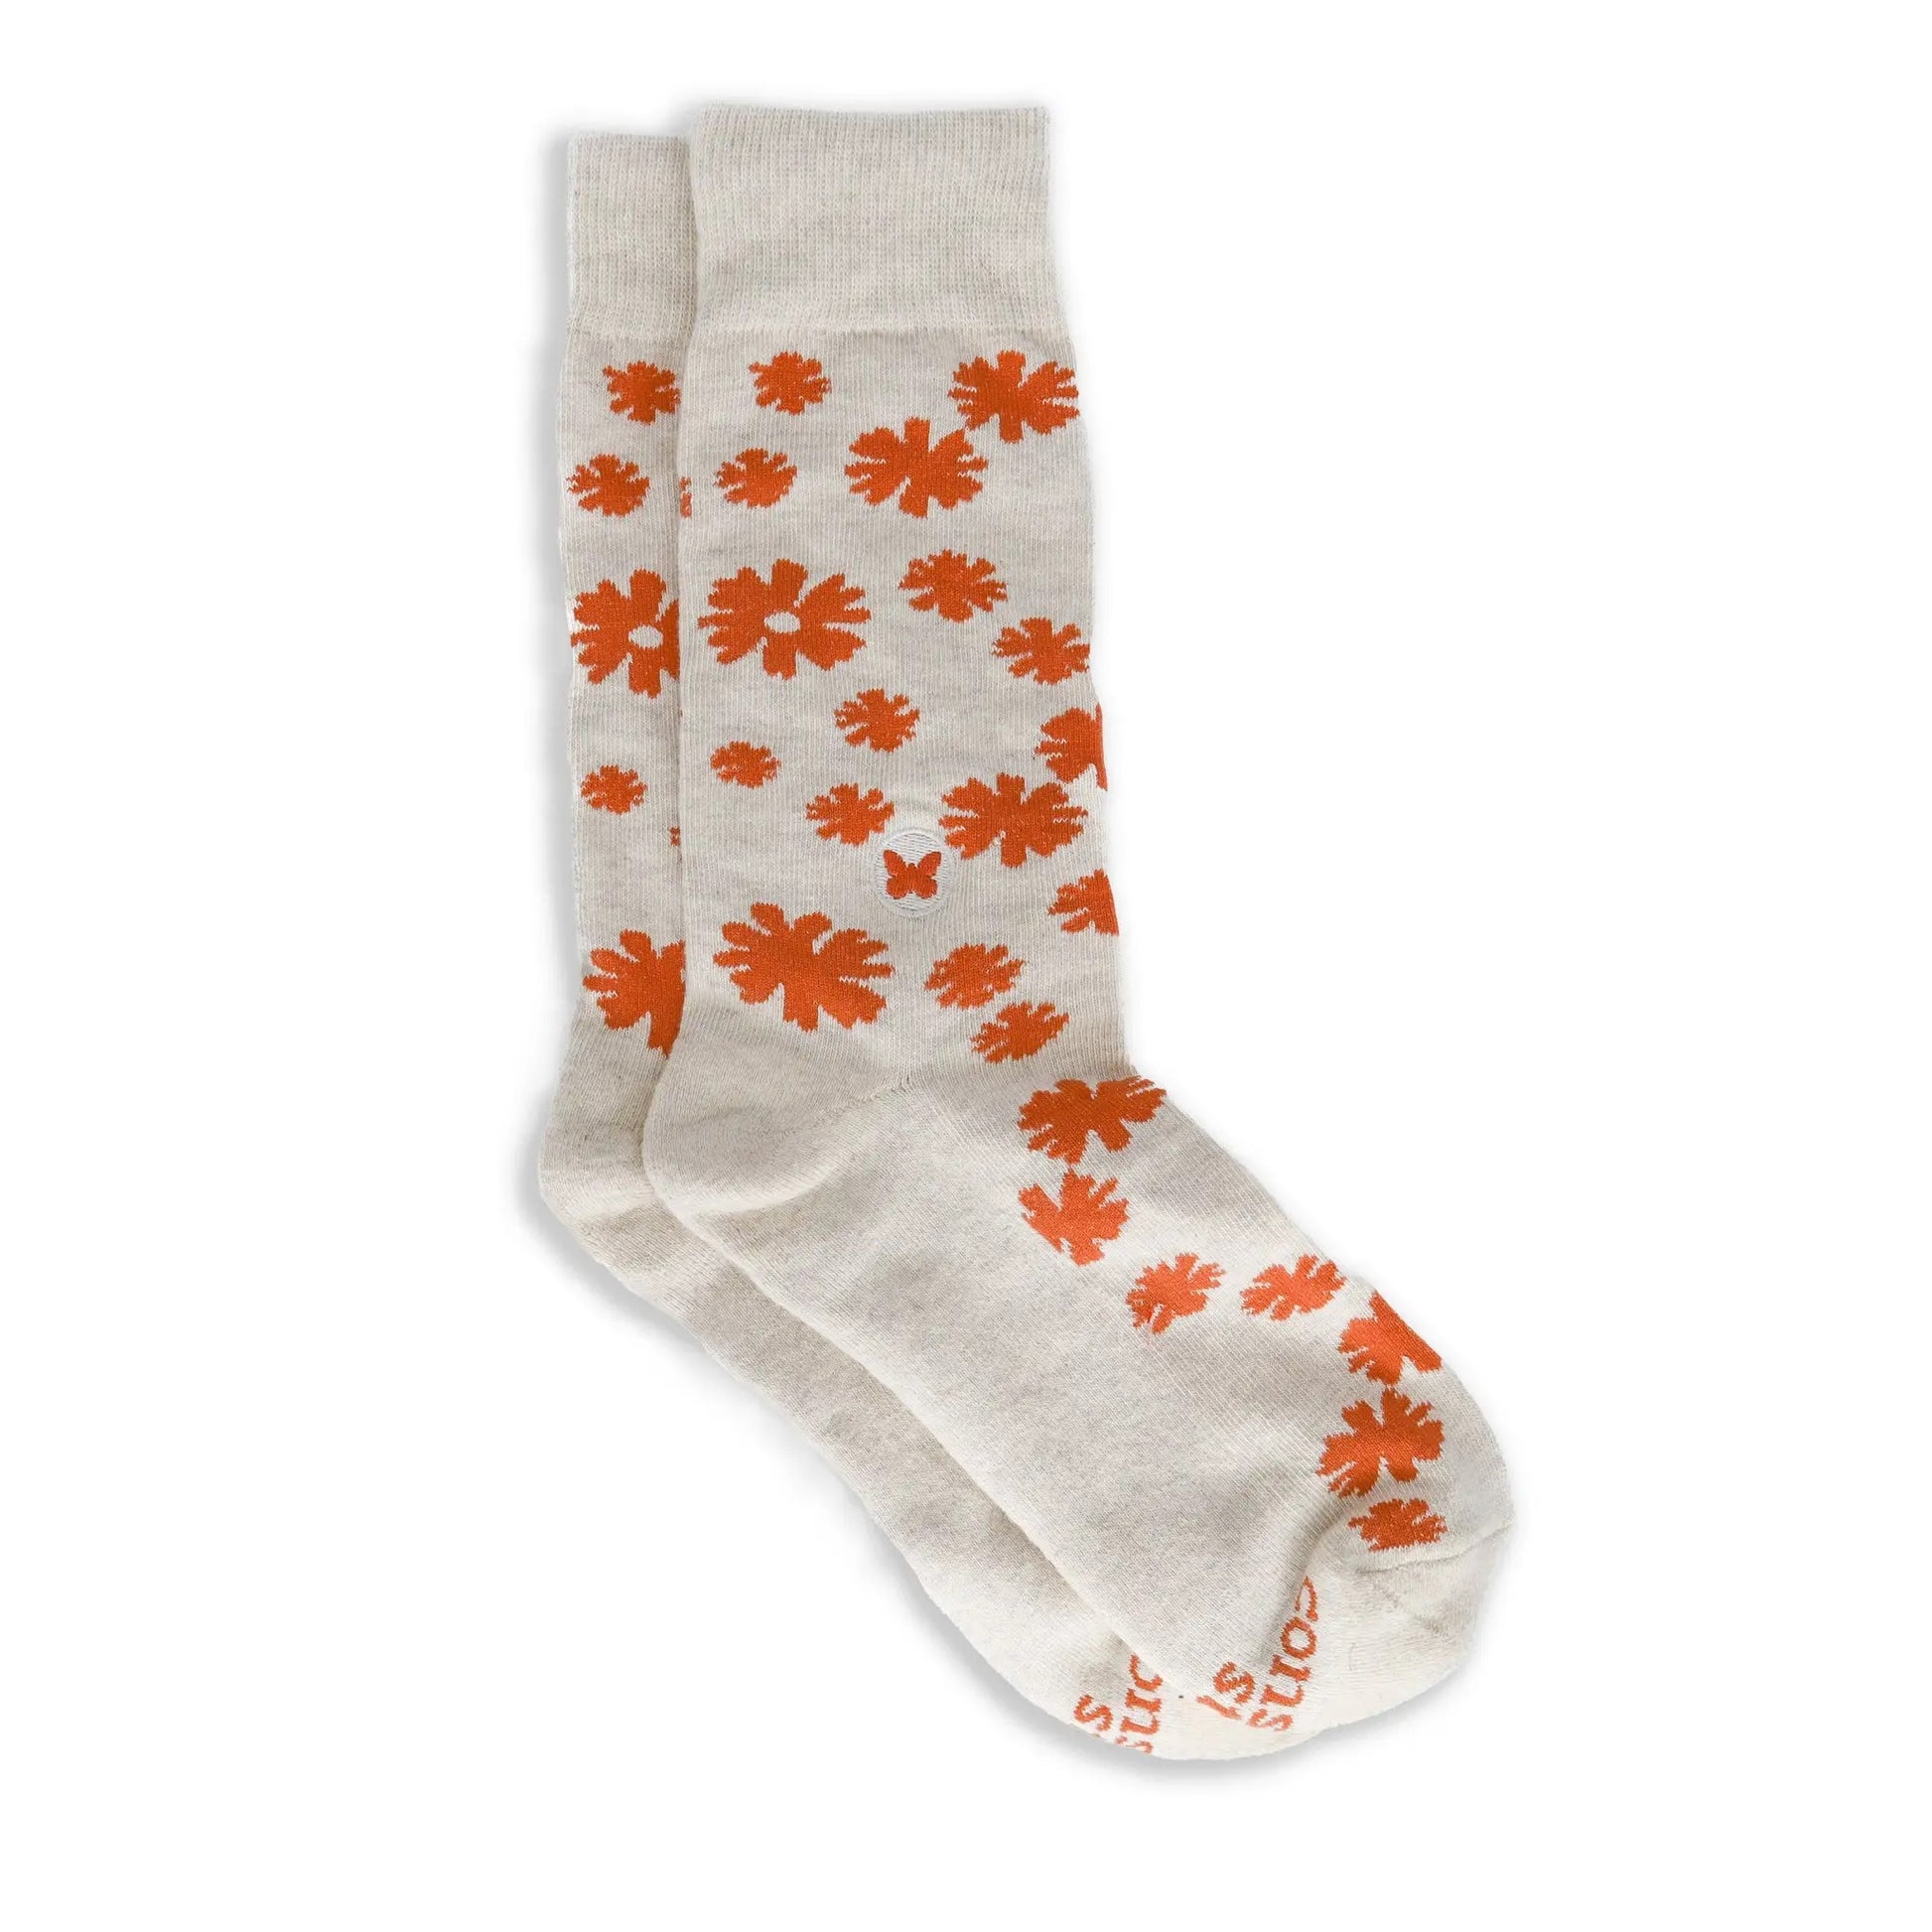 Conscious Step, Socks that Stop Violence Against Women - Fun Florals- Boutique Dandelion